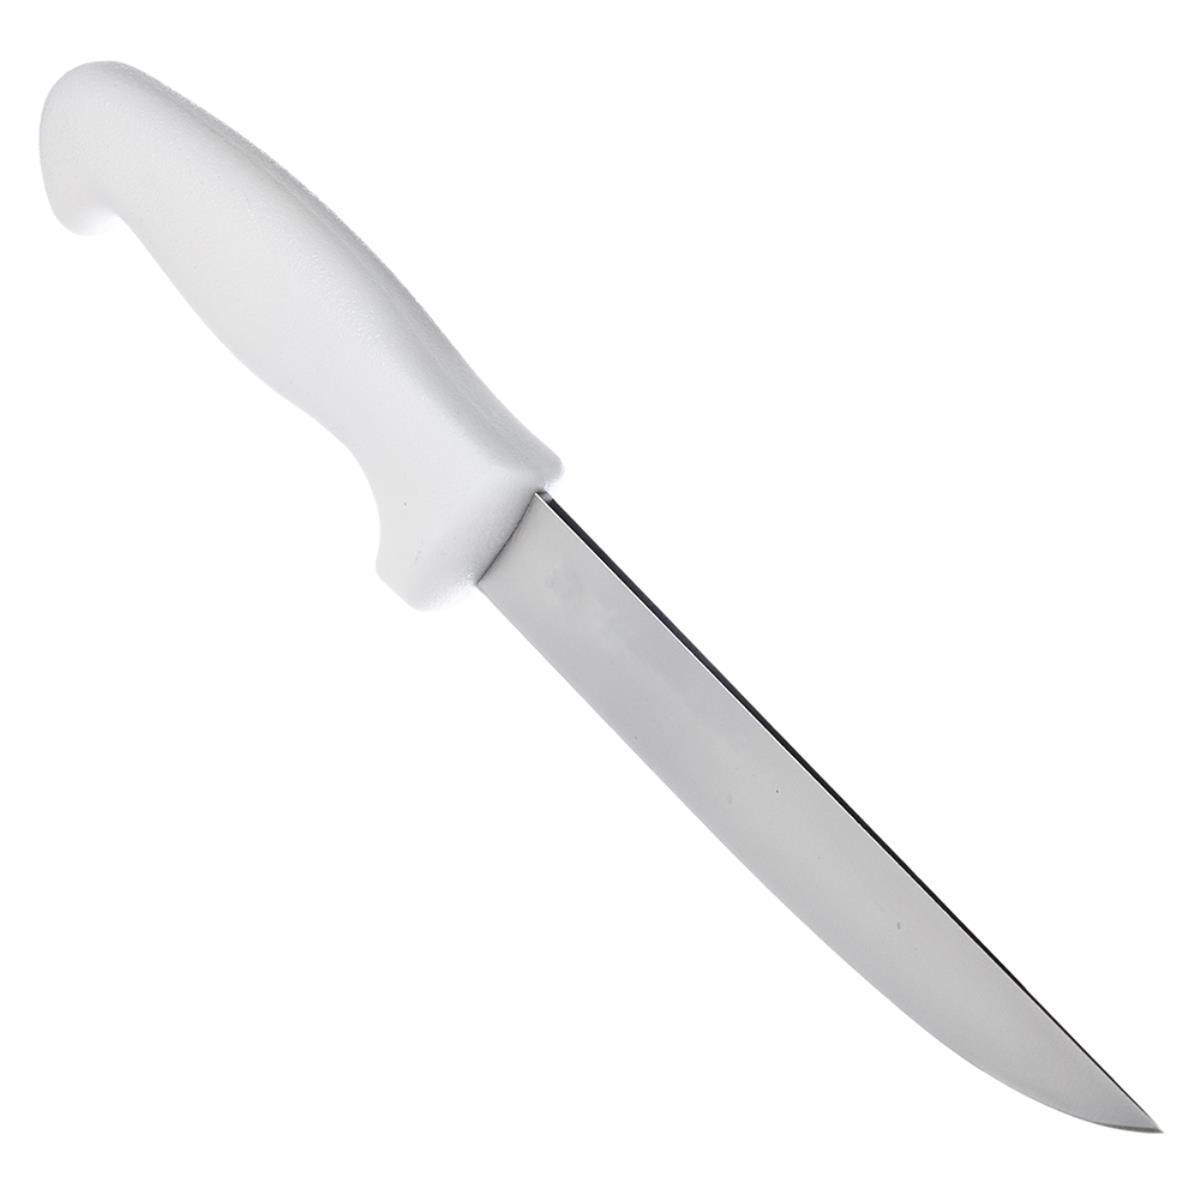 Нож кухонный Professional 15 см 24605/086 (871-053) TRAMONTINA нож кухонный professional 15 см 24605 086 871 053 tramontina